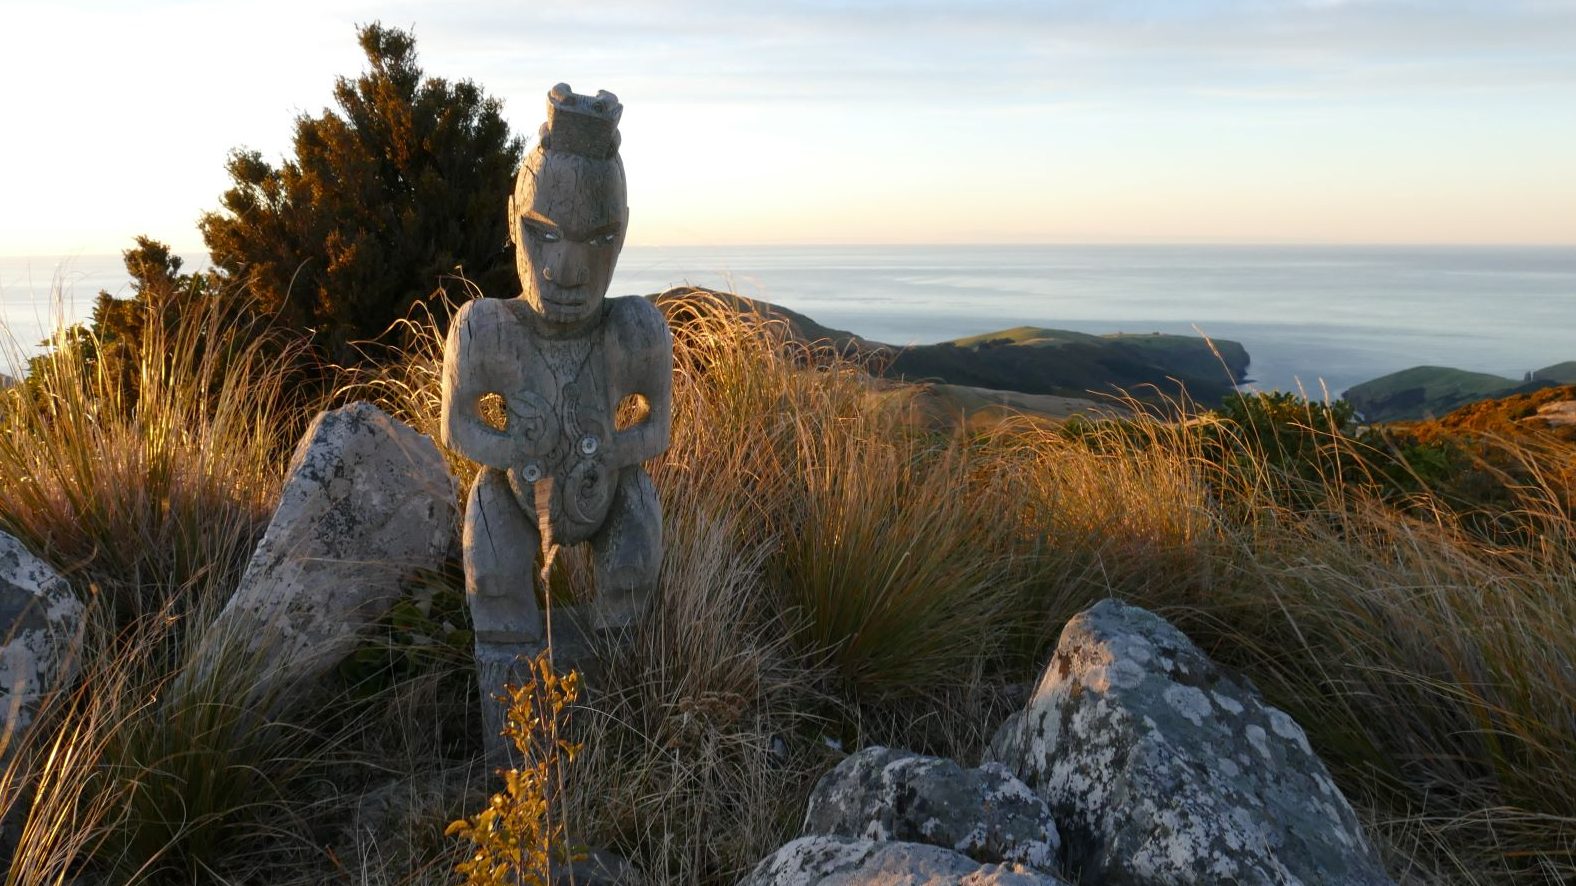 Maori culture and history in Christchurch